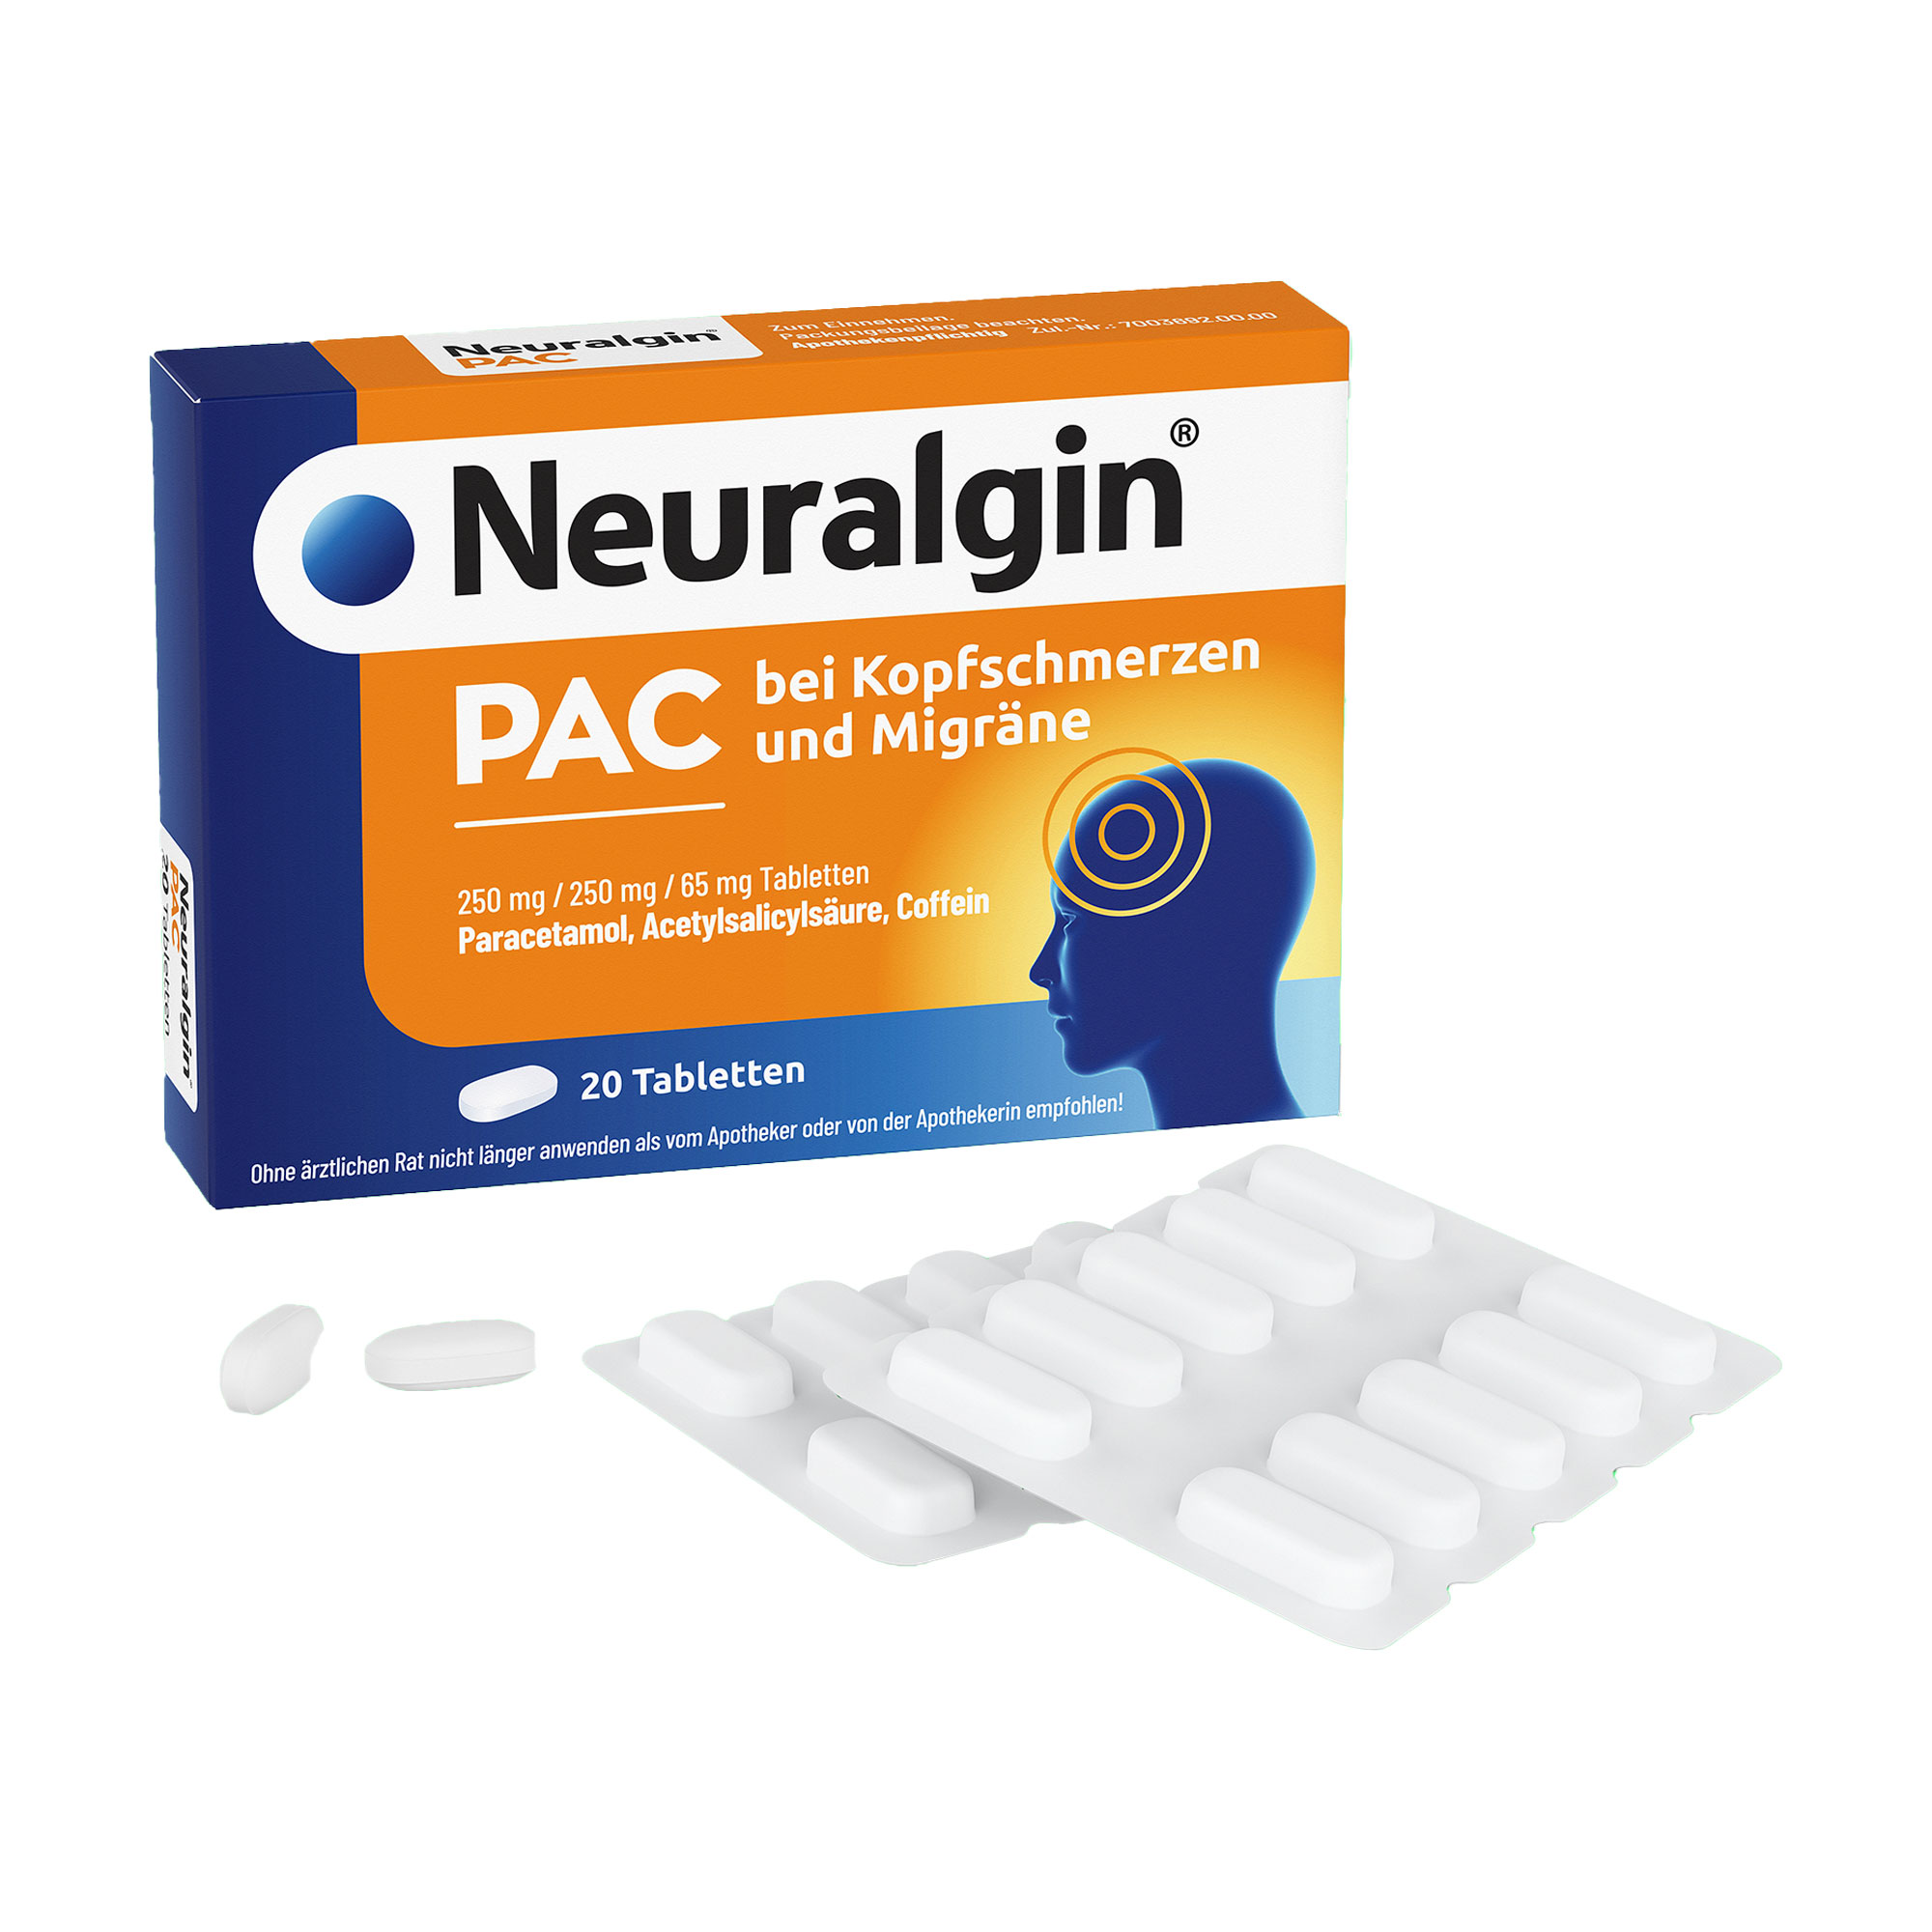 Schmerztabletten mit den Wirkstoffen ASS und Paracetamol sowie dem Wirkbeschleuniger Coffein. Bei akuten Kopfschmerzen und Migräne.